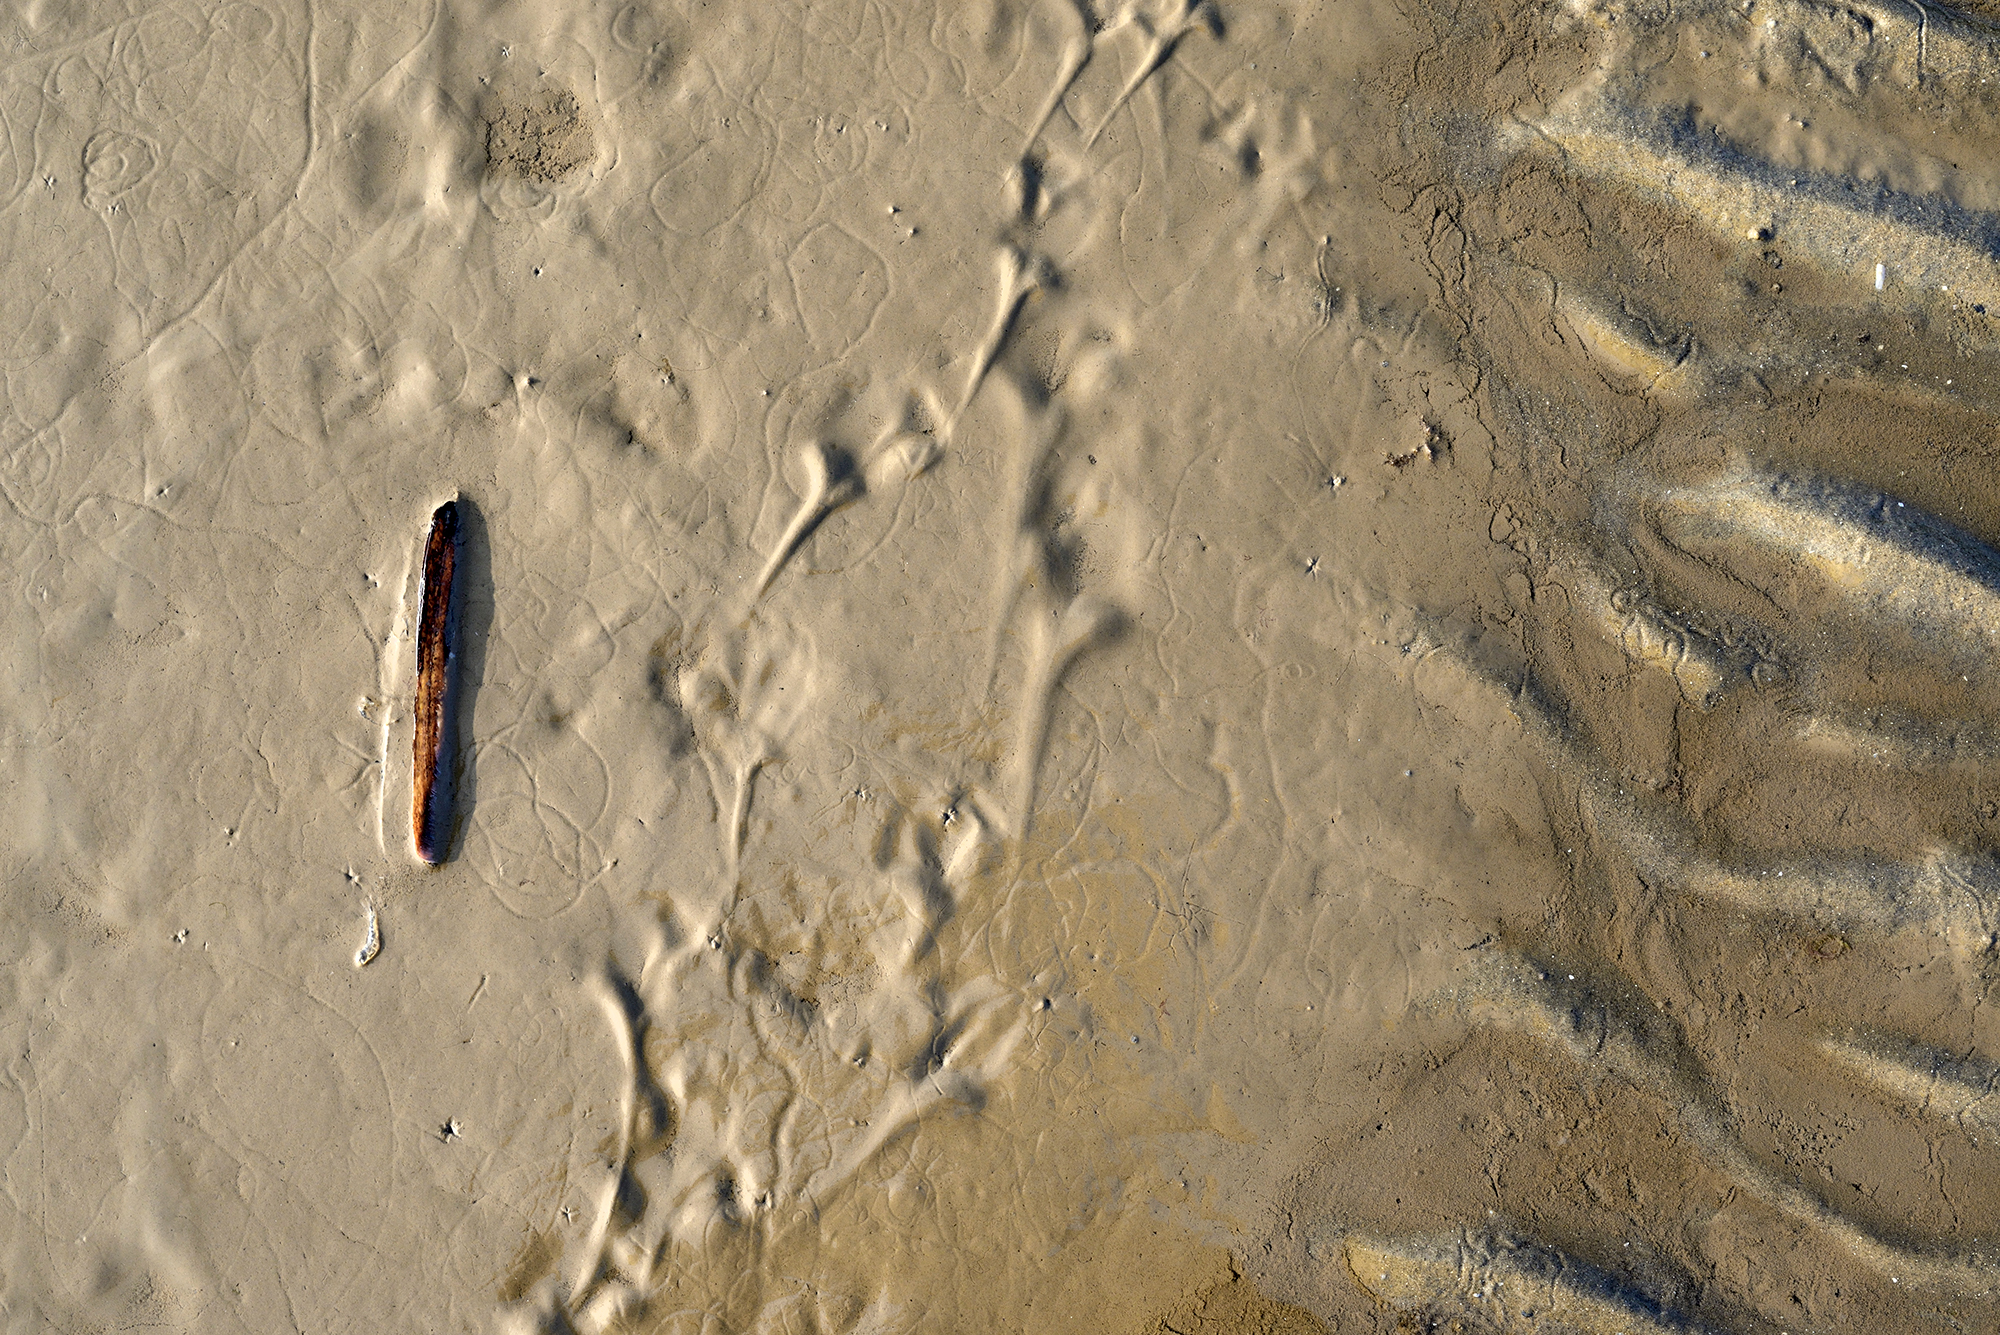 Lijnen en patronen in het zand en slik tijdens laagwater op het strand van de Kwade Hoek in de Duinen van Goeree.